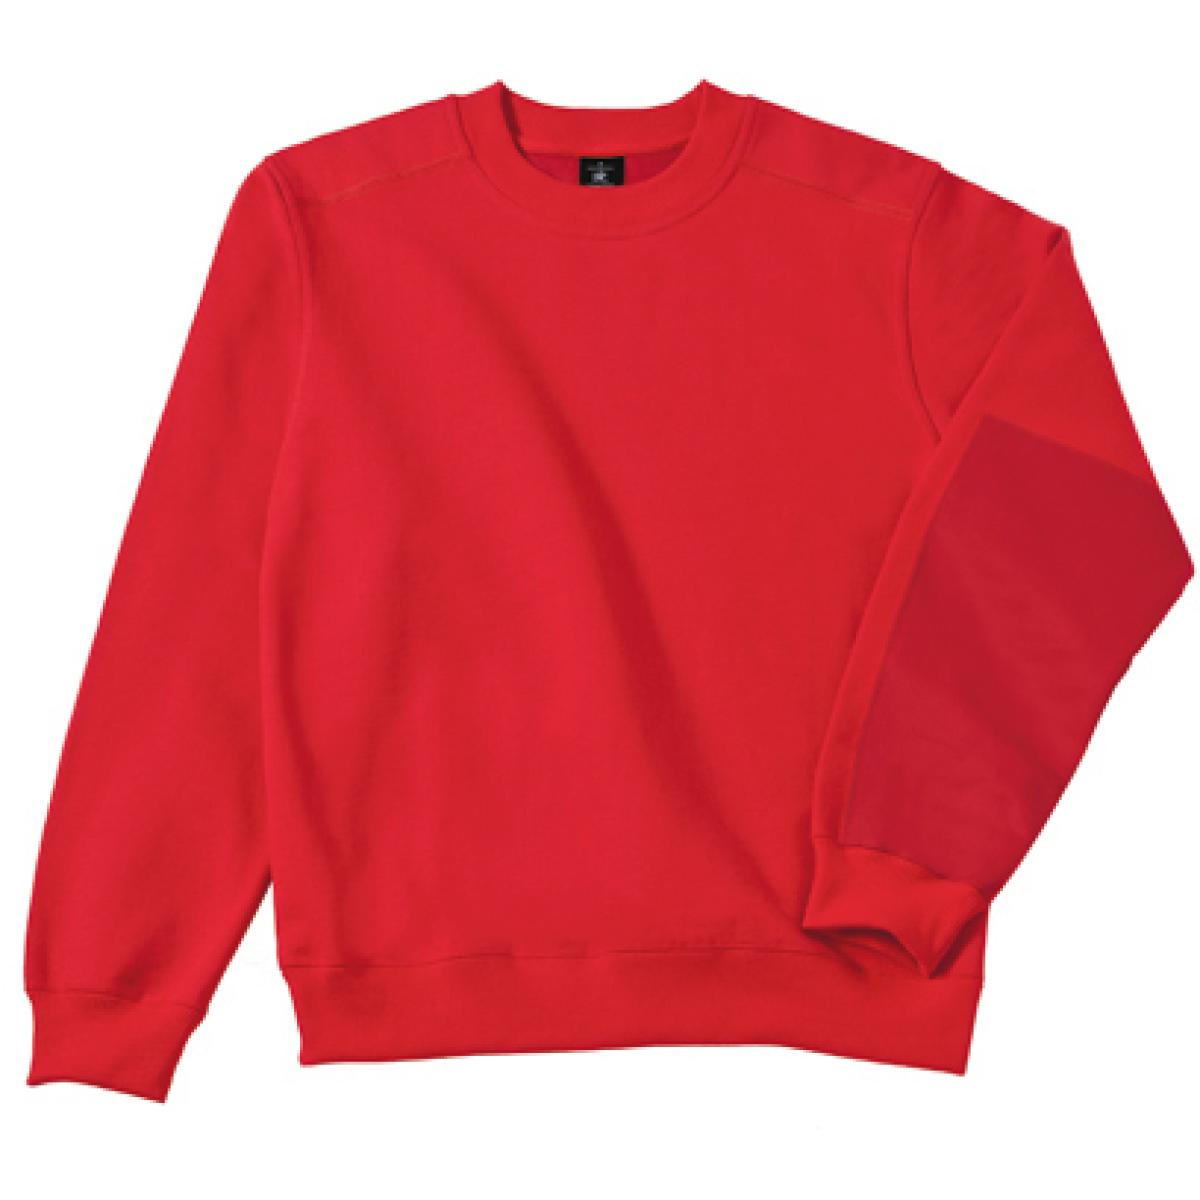 Hersteller: B&C Pro Collection Herstellernummer: WUC20 Artikelbezeichnung: Hero Pro Workwear Sweatshirt + Waschbar bis 60 °C Farbe: Red